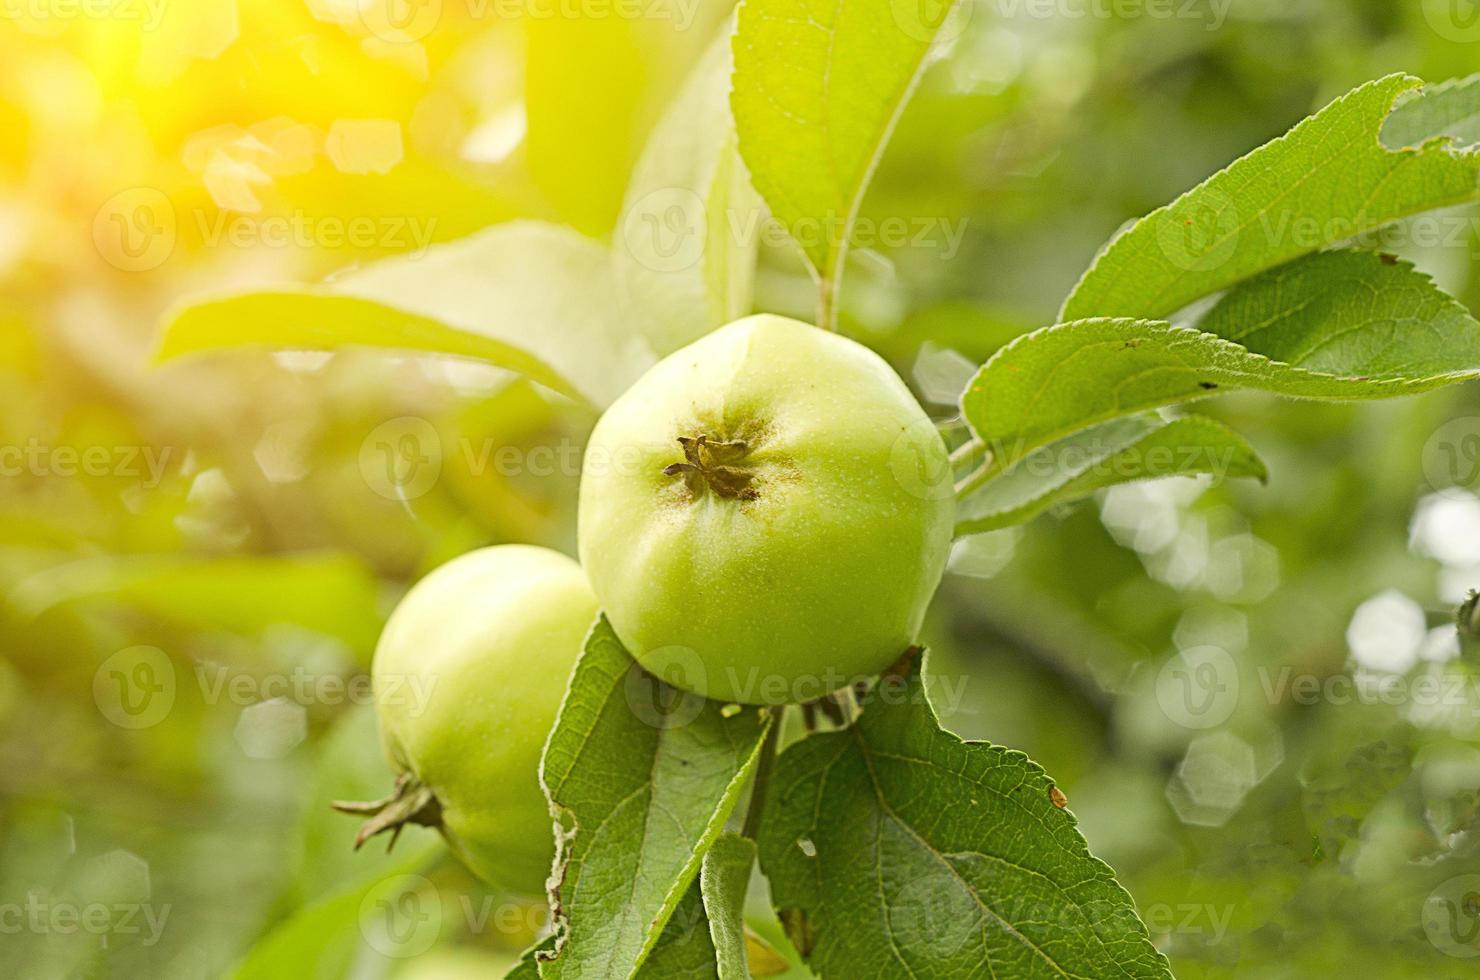 al atardecer, dos manzanas verdes cuelgan de la rama del árbol en el jardín. foto